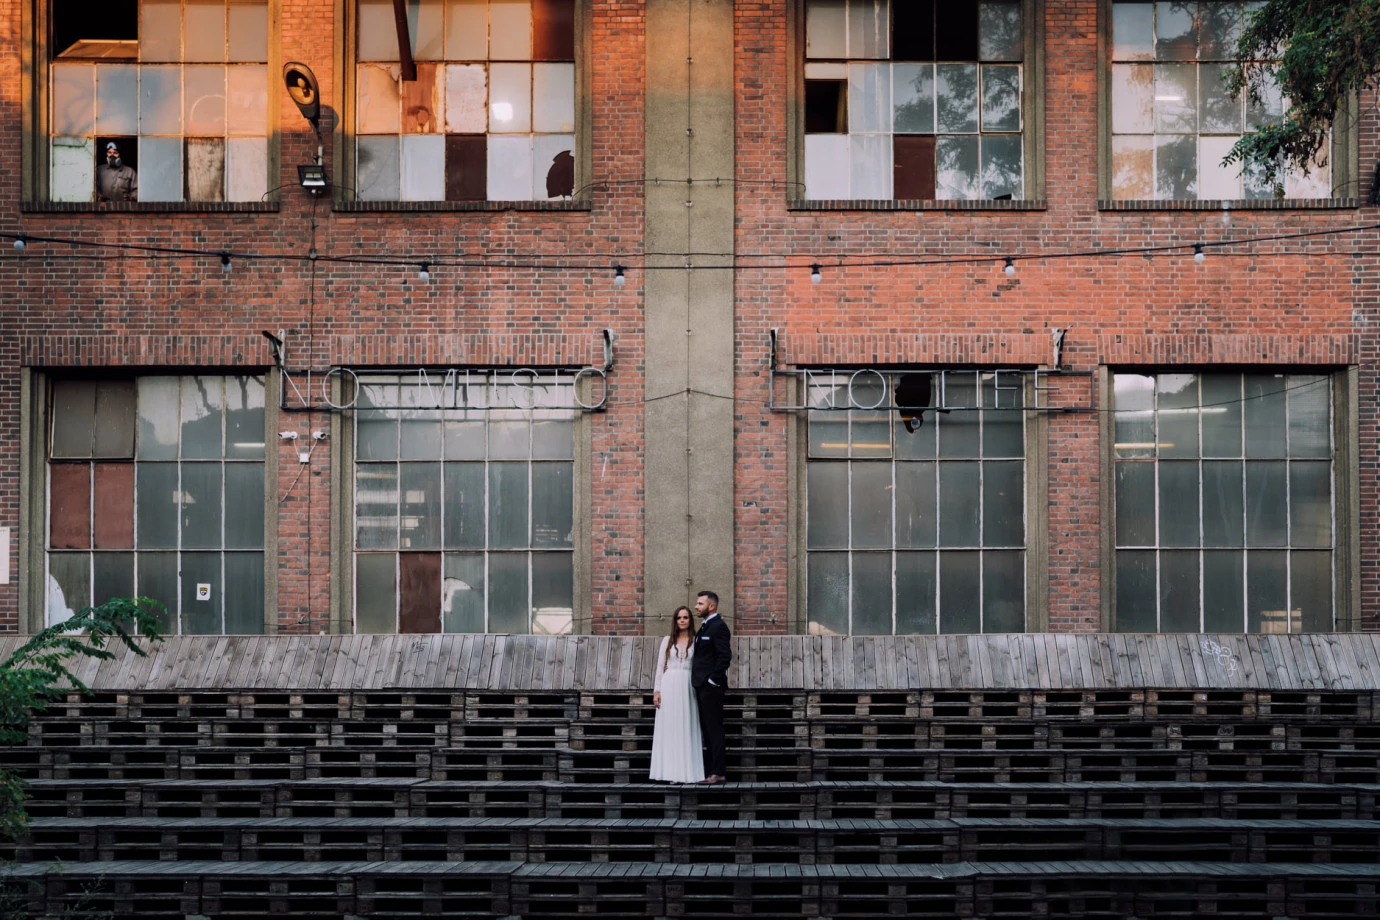 zdjęcia gdansk fotograf studio-kudra portfolio zdjecia slubne inspiracje wesele plener slubny sesja slubna